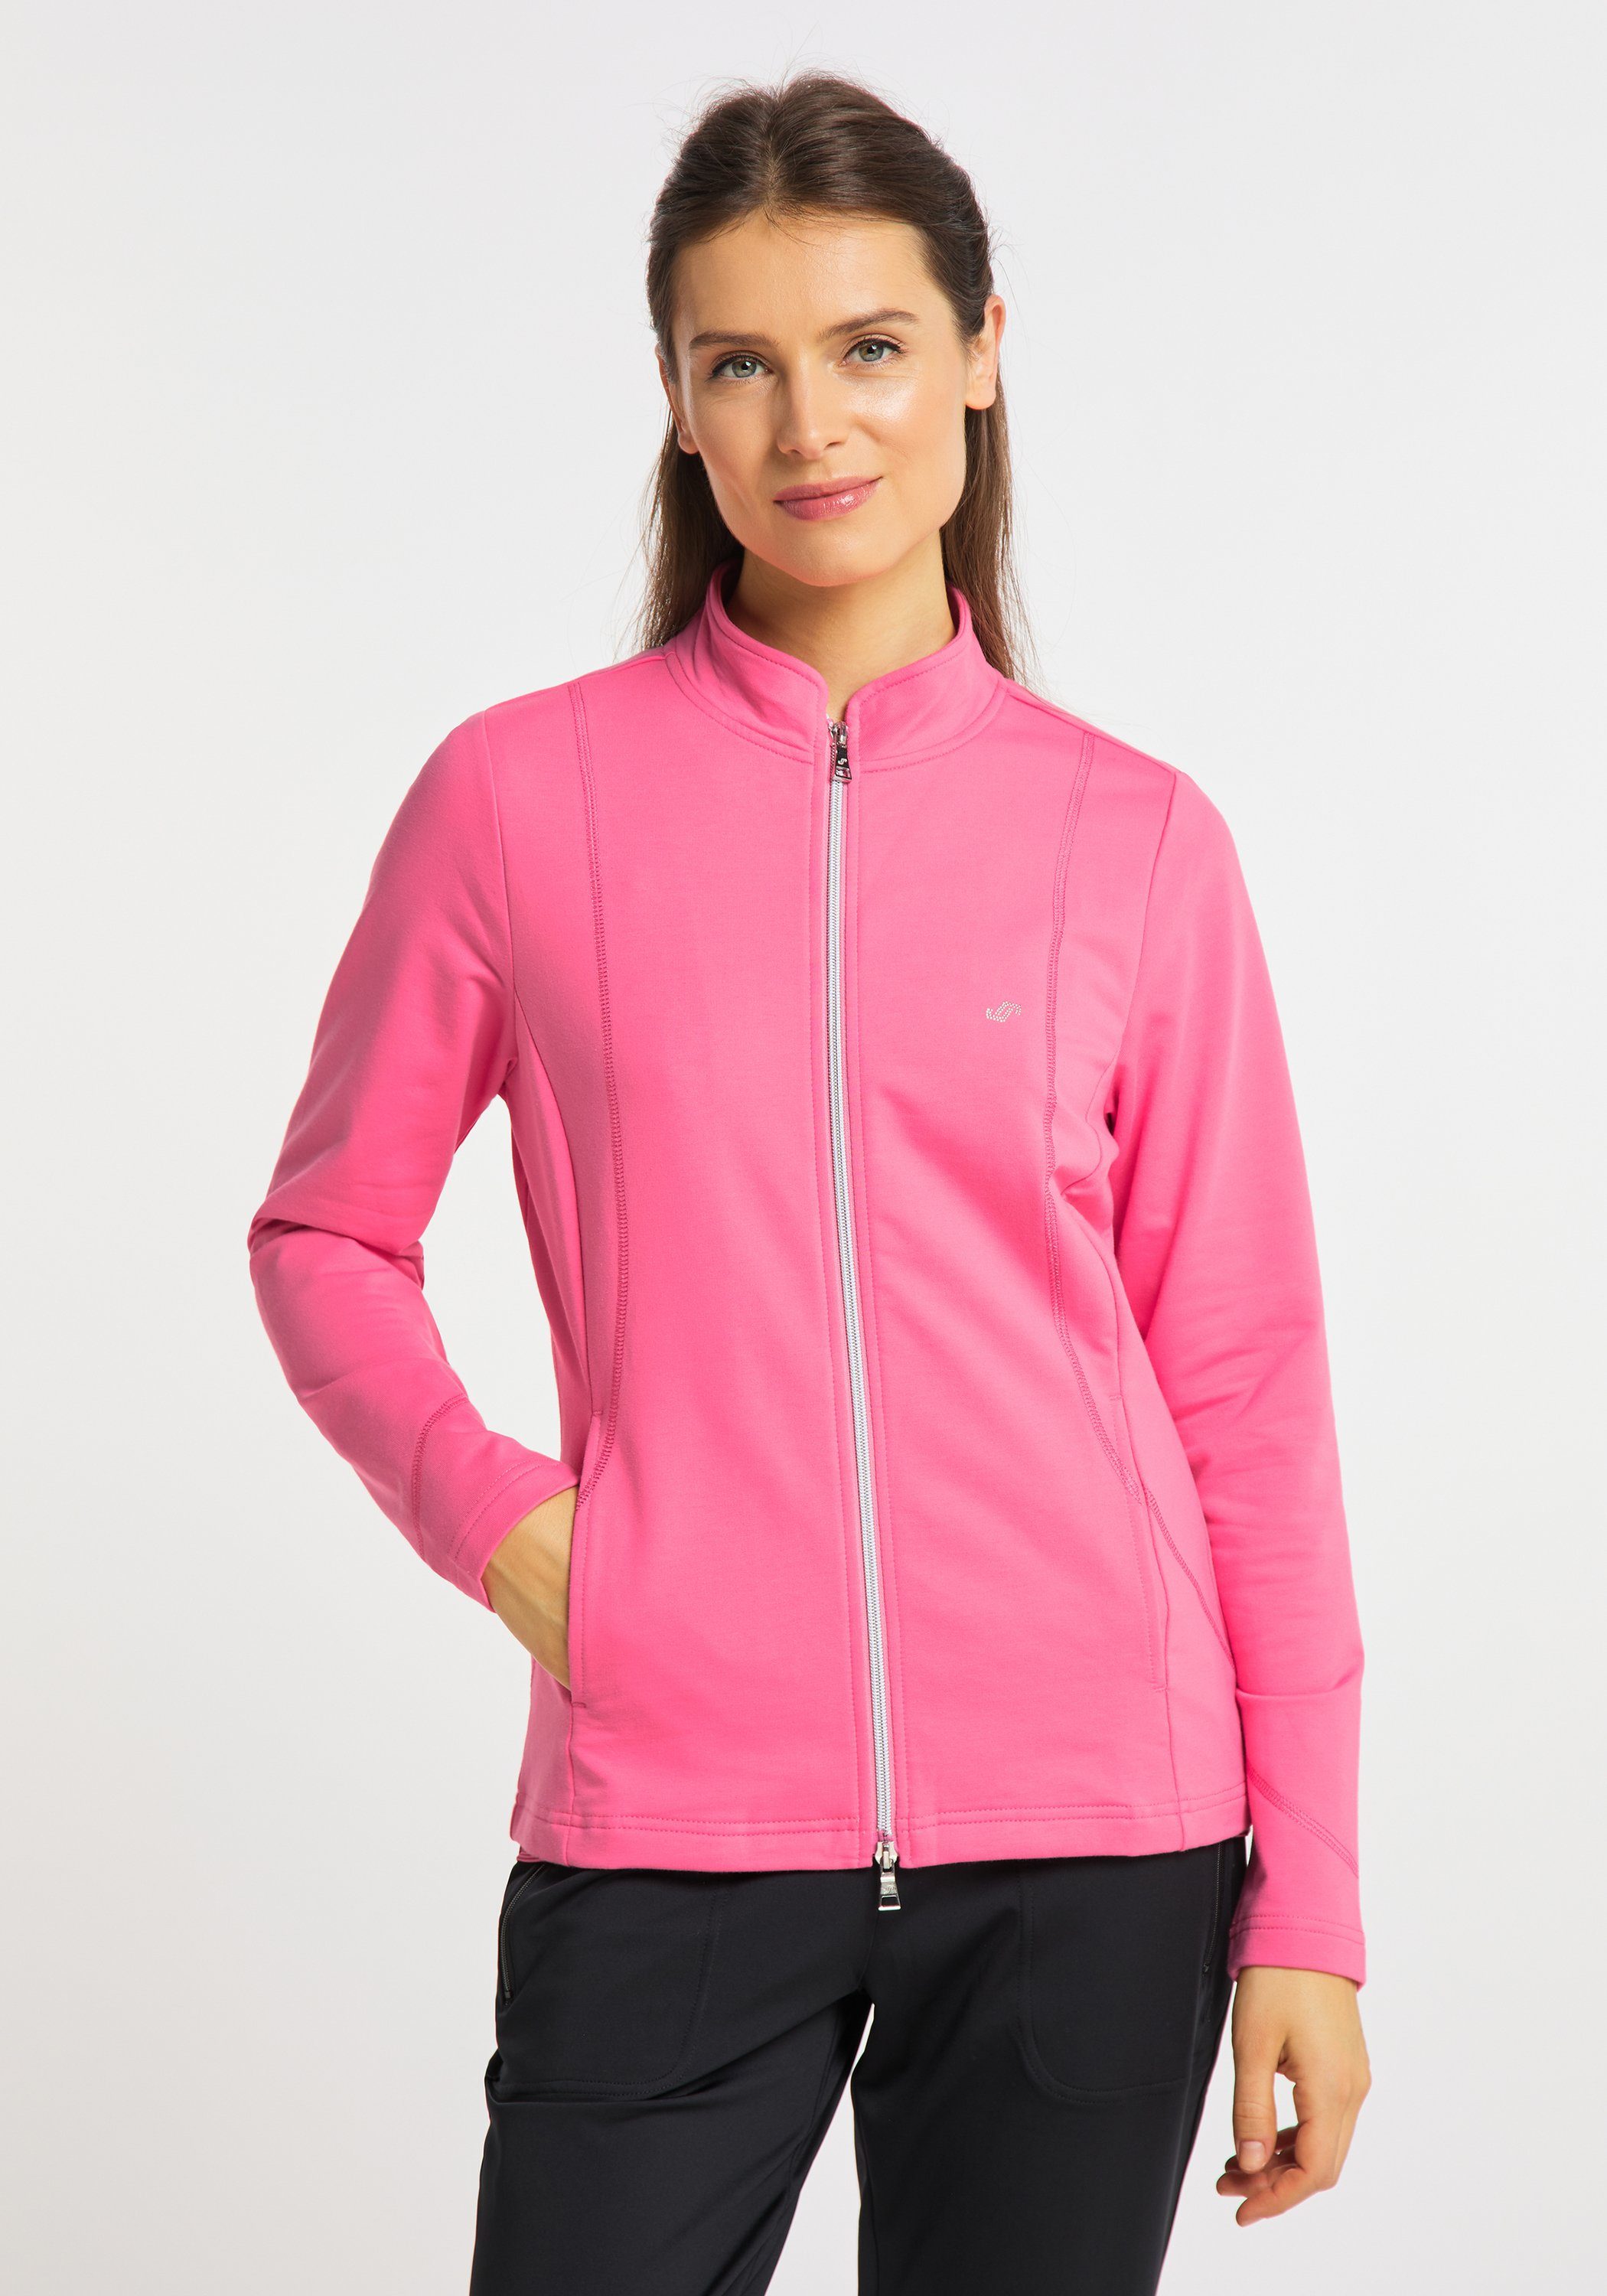 Jacke pink Trainingsjacke Sportswear DORIT camelia Joy